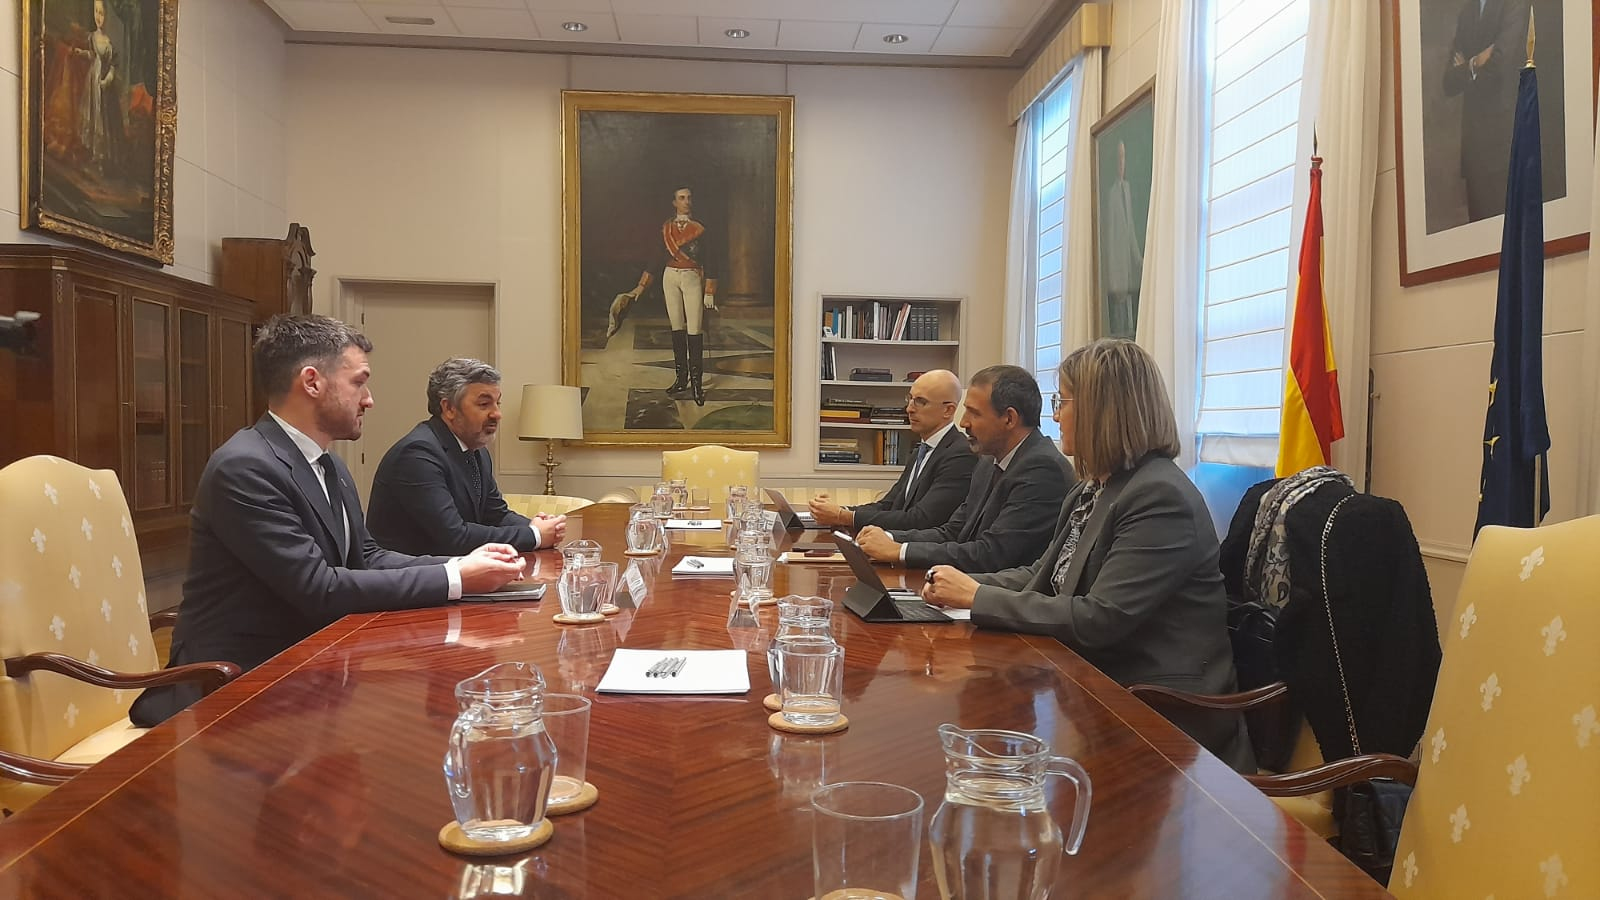 Imagen - El Gobierno de Asturias mantendrá su exigencia sobre la apertura de la variante de Pajares en reuniones técnicas periódicas con el ministerio